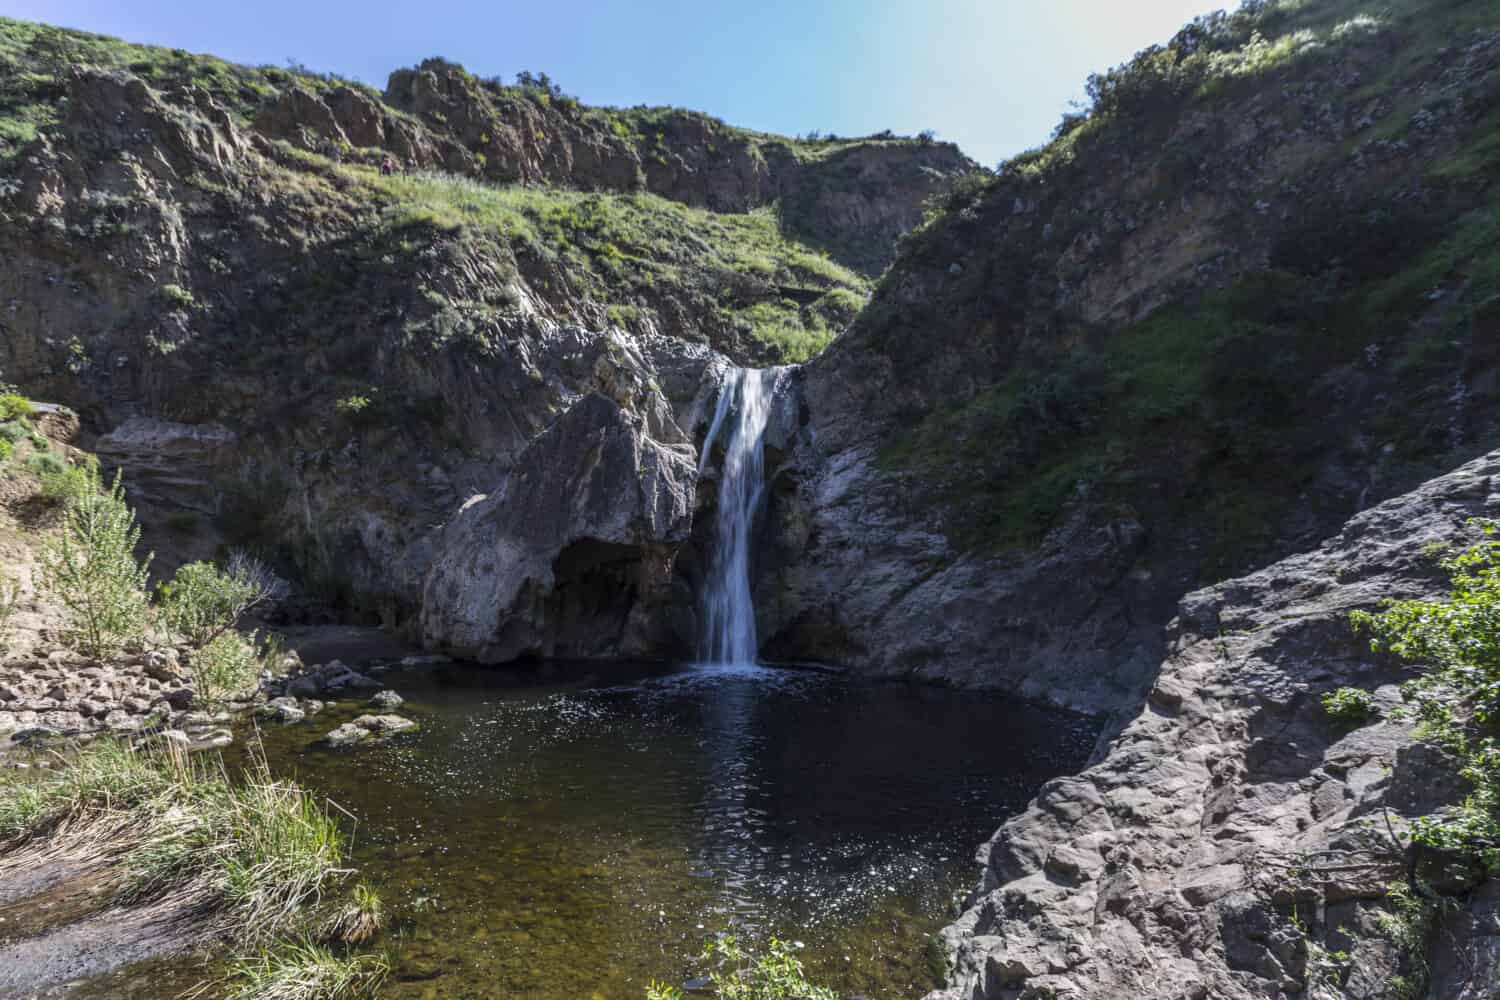 Paradise Falls at Wildwood Regional Park in Thousand Oaks, California.